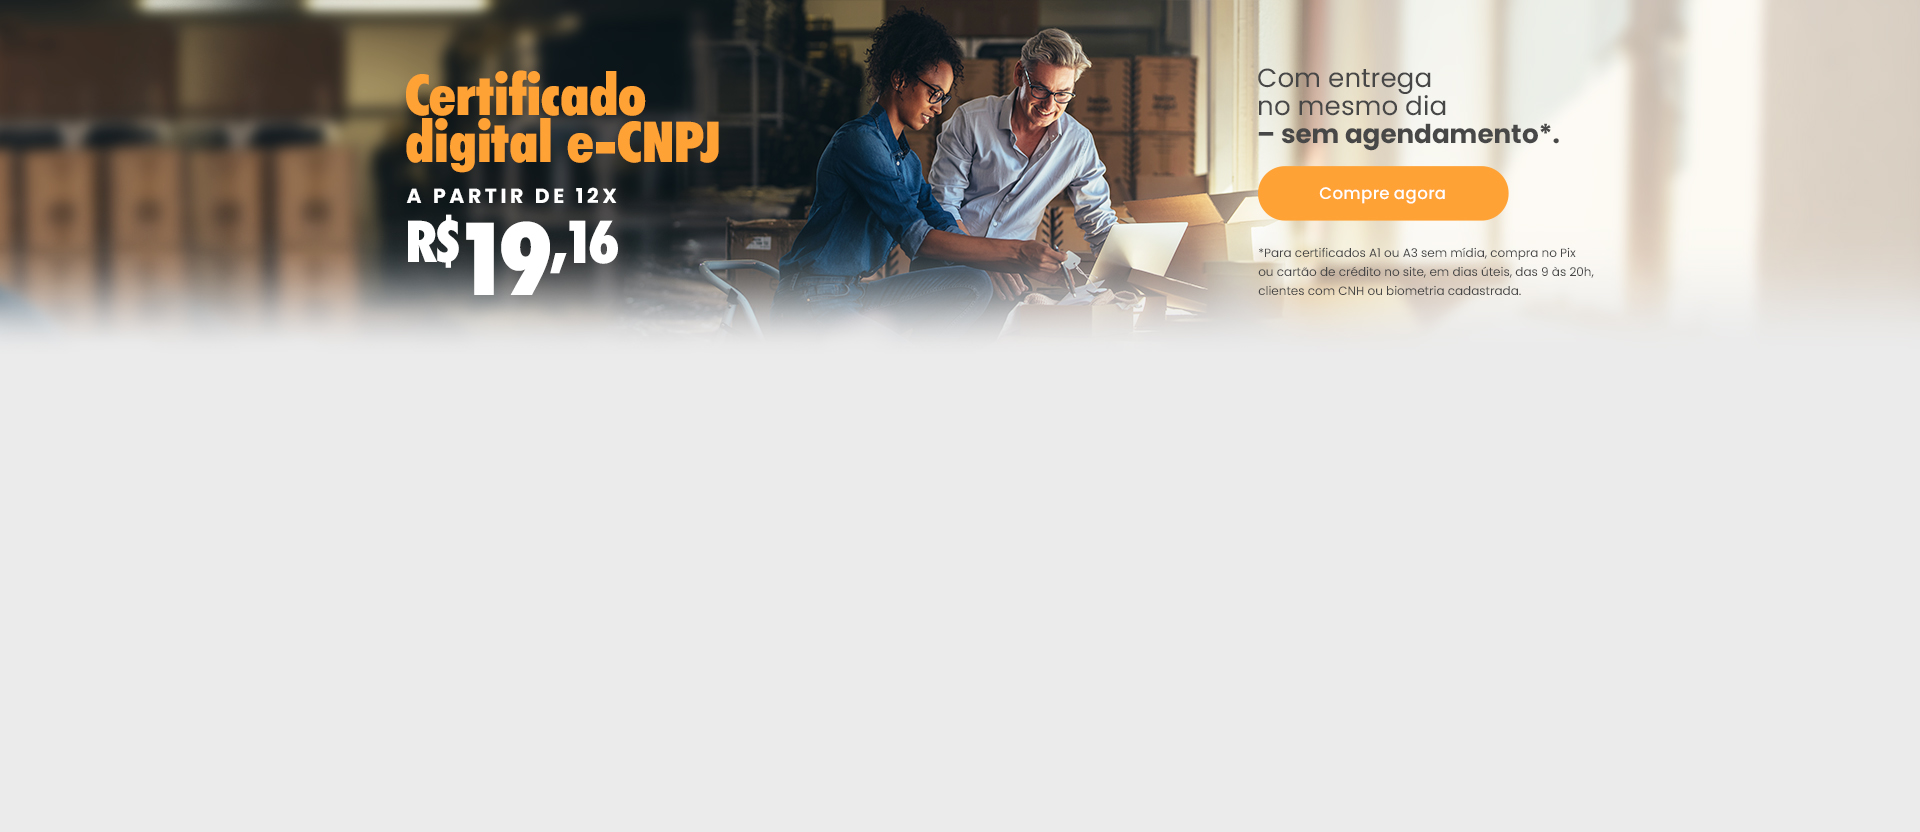 Certificado digital e-CNPJ a partir de de 12x R$ 19,60. Com entrega no mesmo dia, sem agendamento.